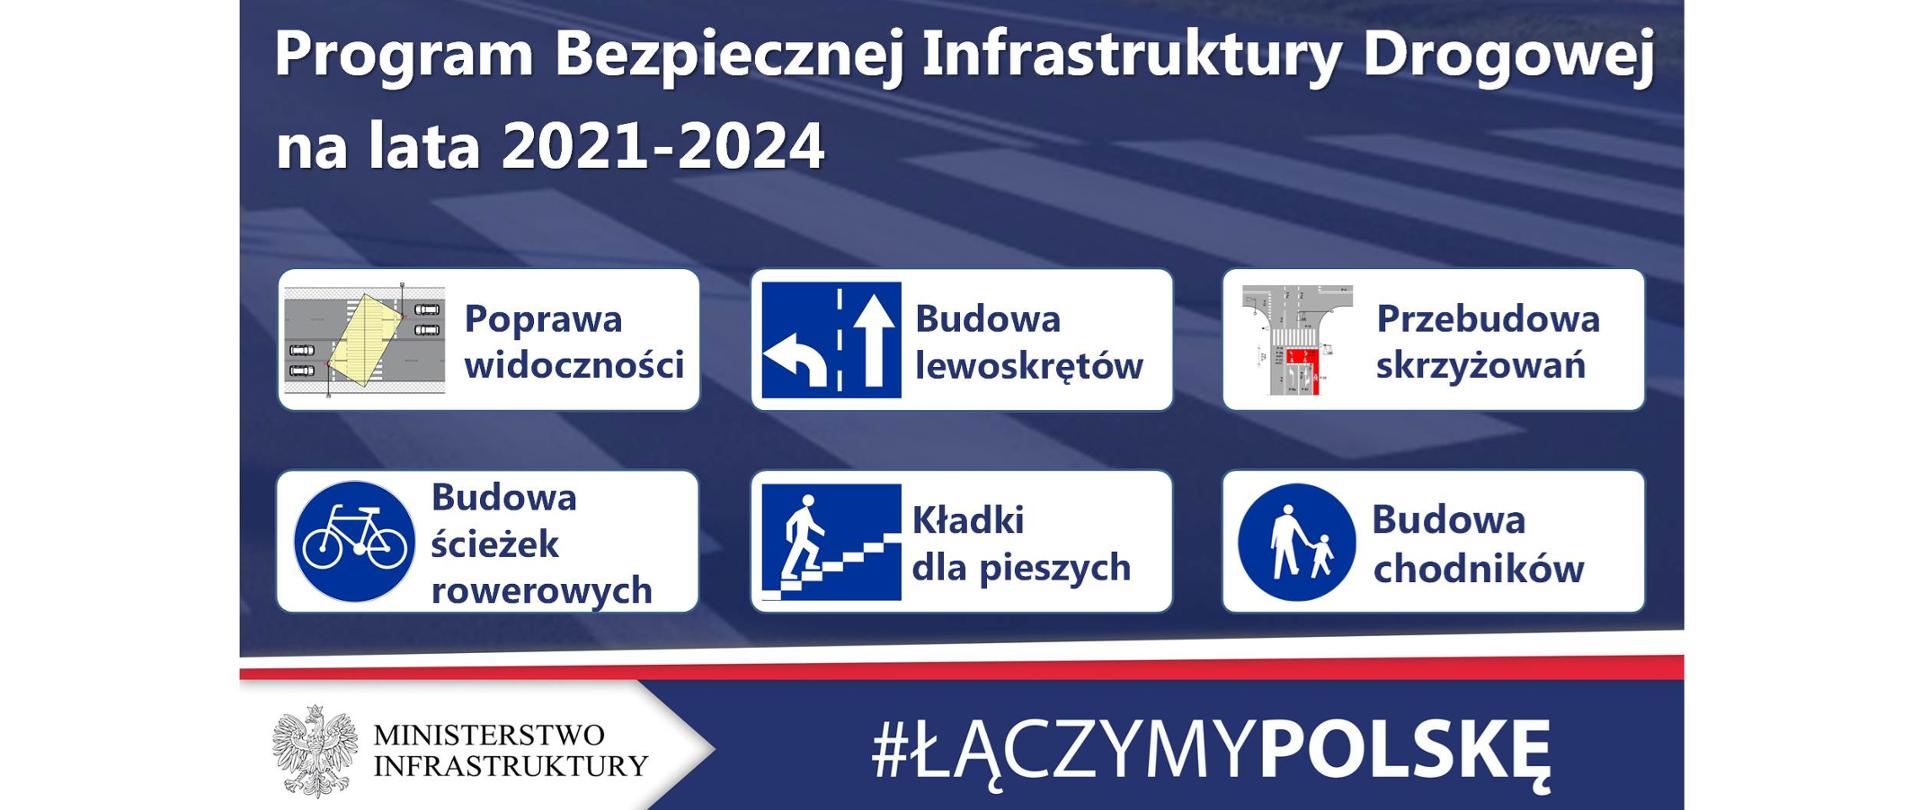 Program Bezpiecznej Infrastruktury Drogowej na lata 2021 - 2024 - infografika